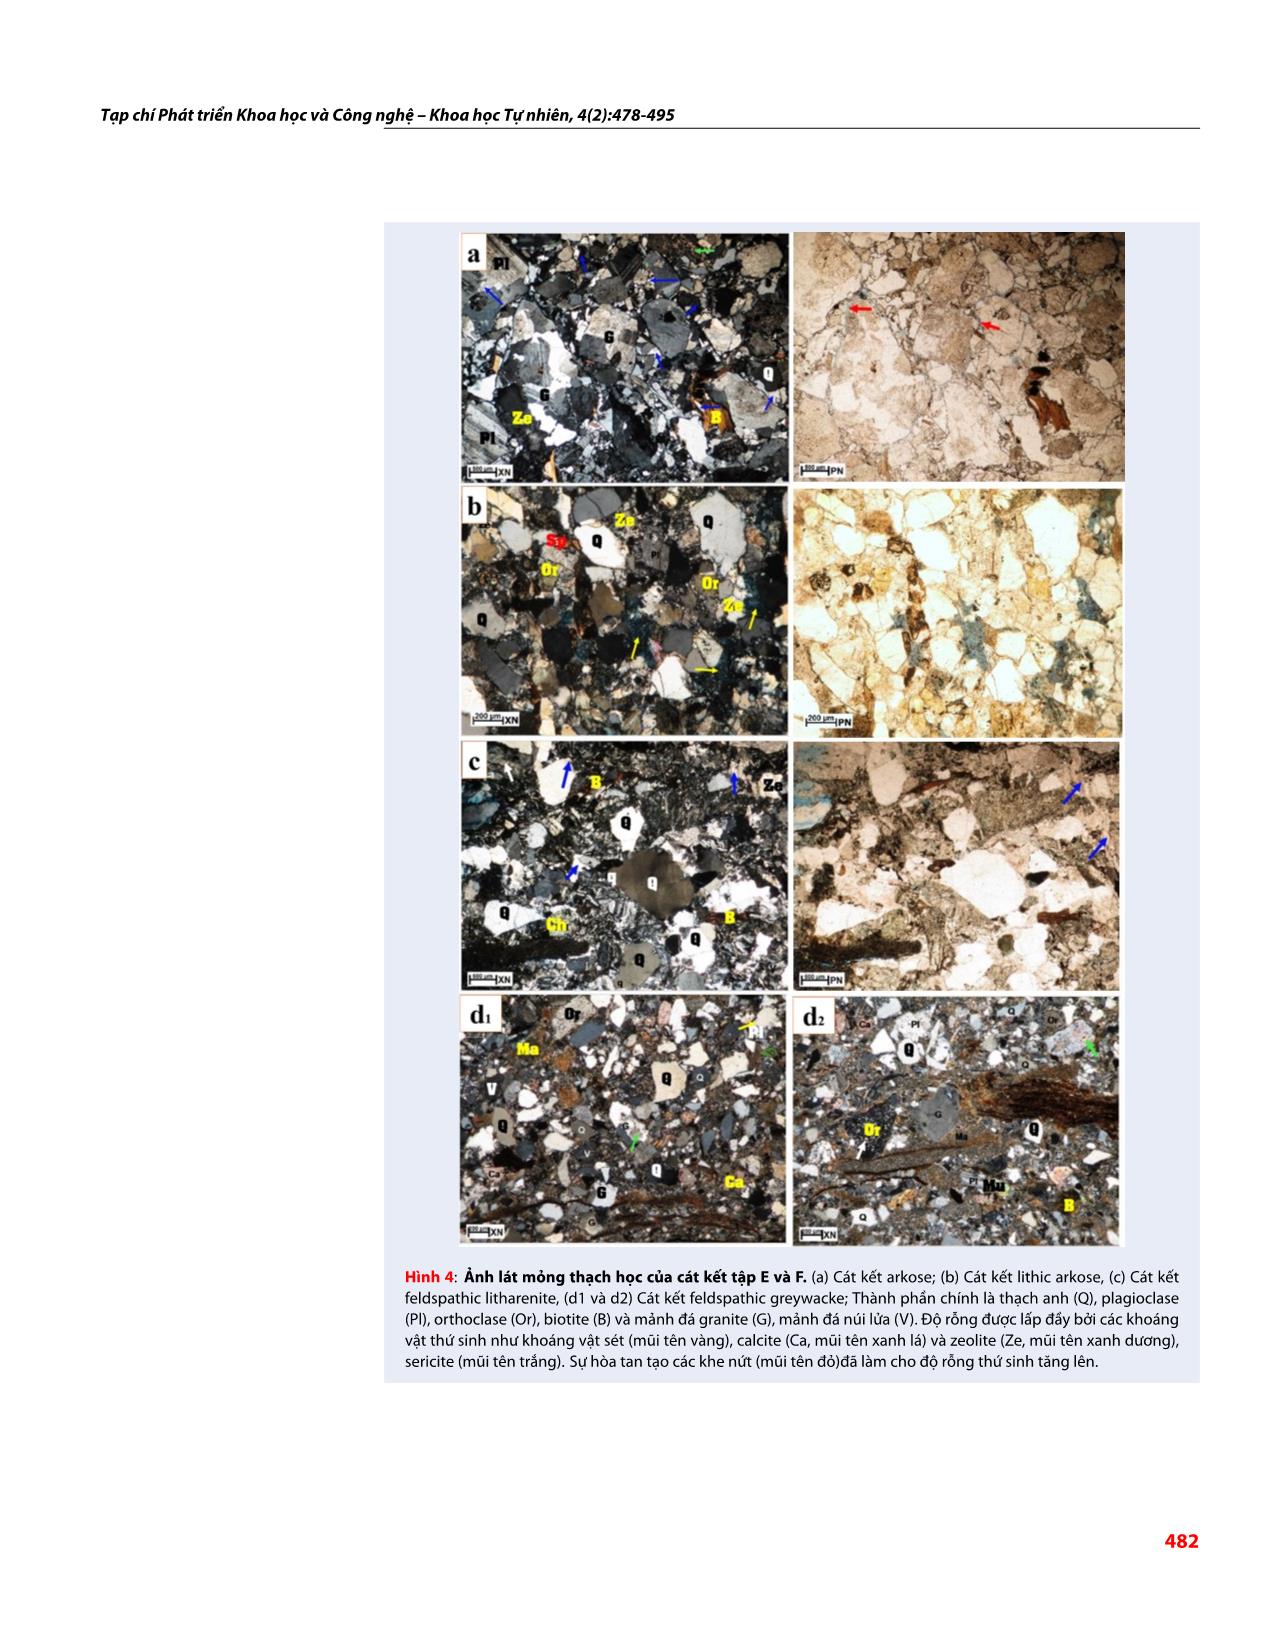 Đặc tính thạch học và biến đổi sau trầm tích ảnh hưởng đến độ rỗng và độ thấm của cát kết Oligocene, lô 15-1/05, bể Cửu Long trang 5